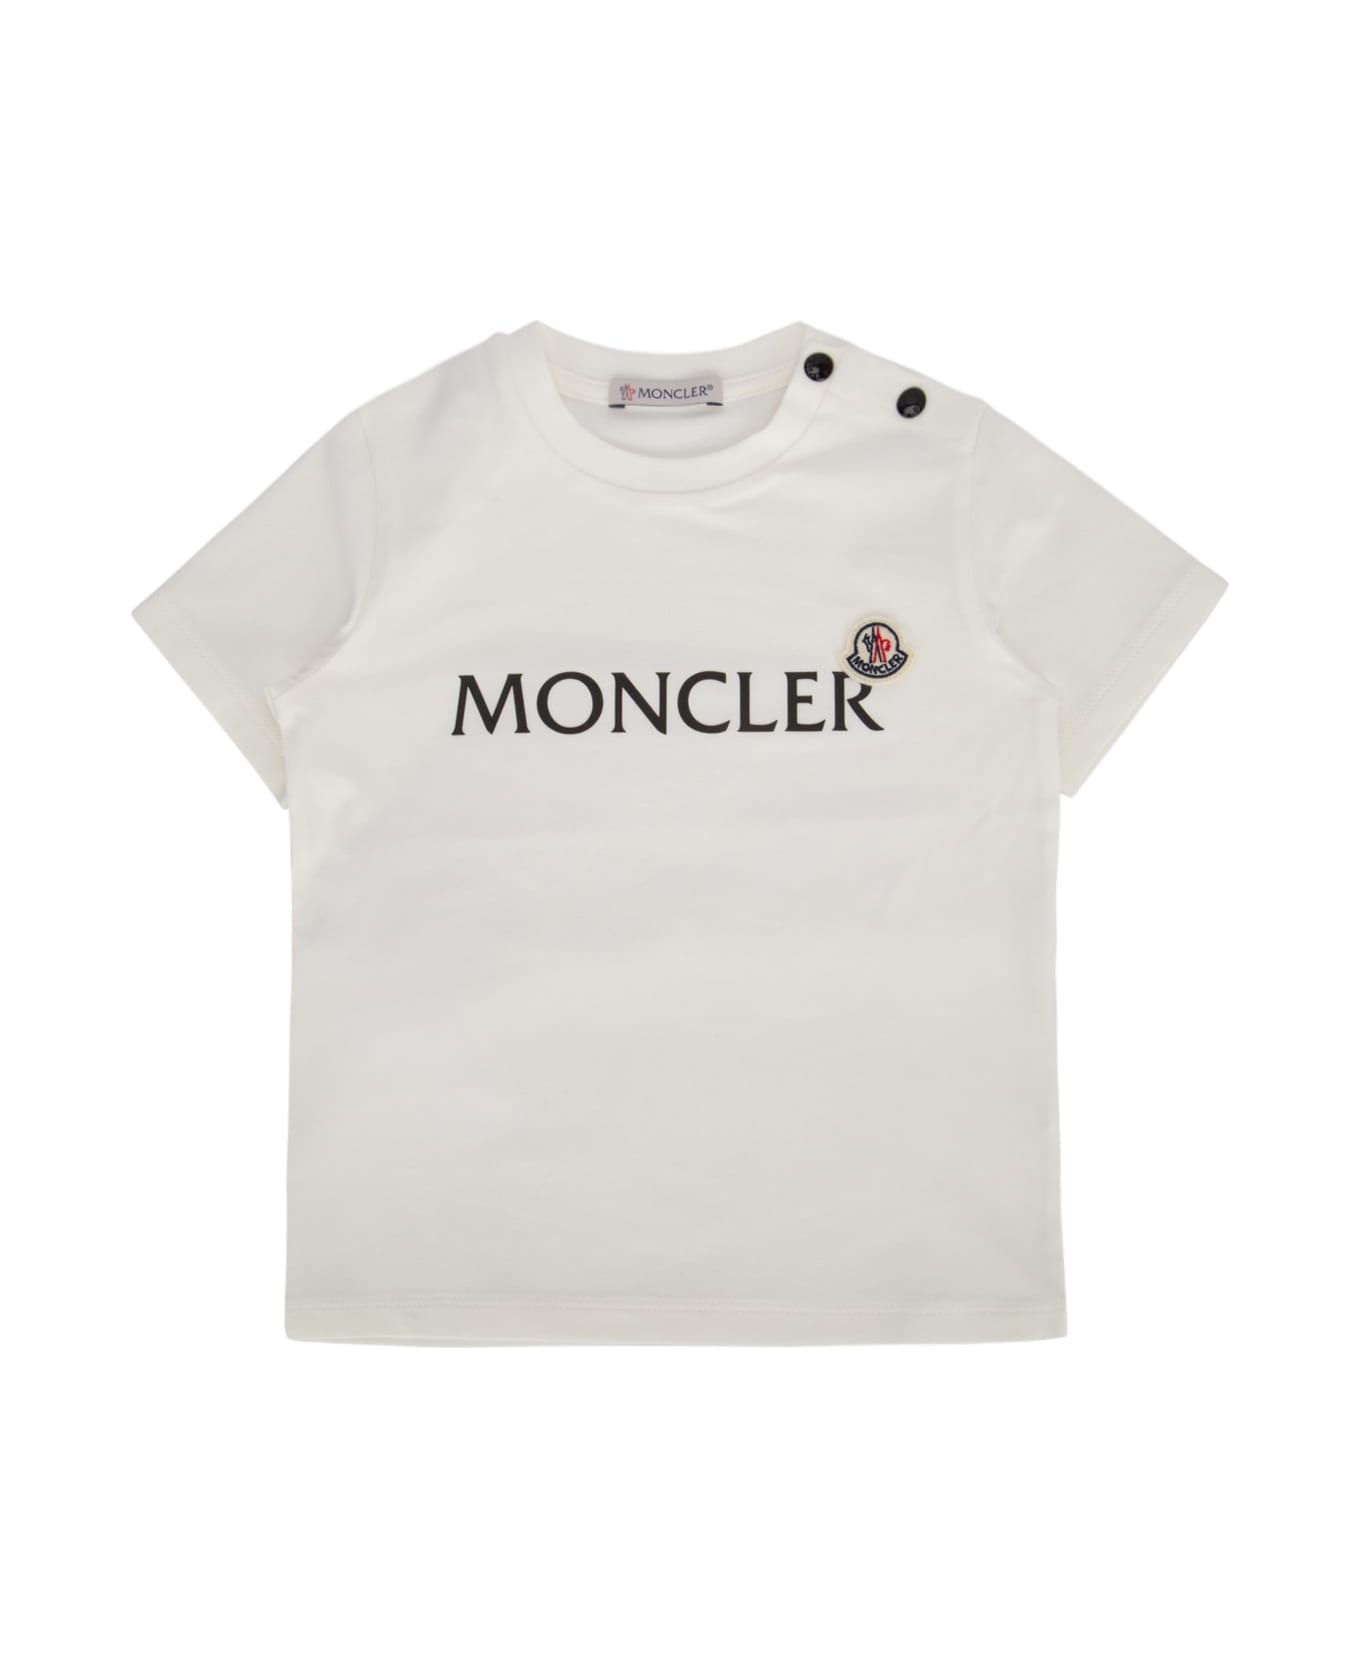 Moncler Maglione - F09